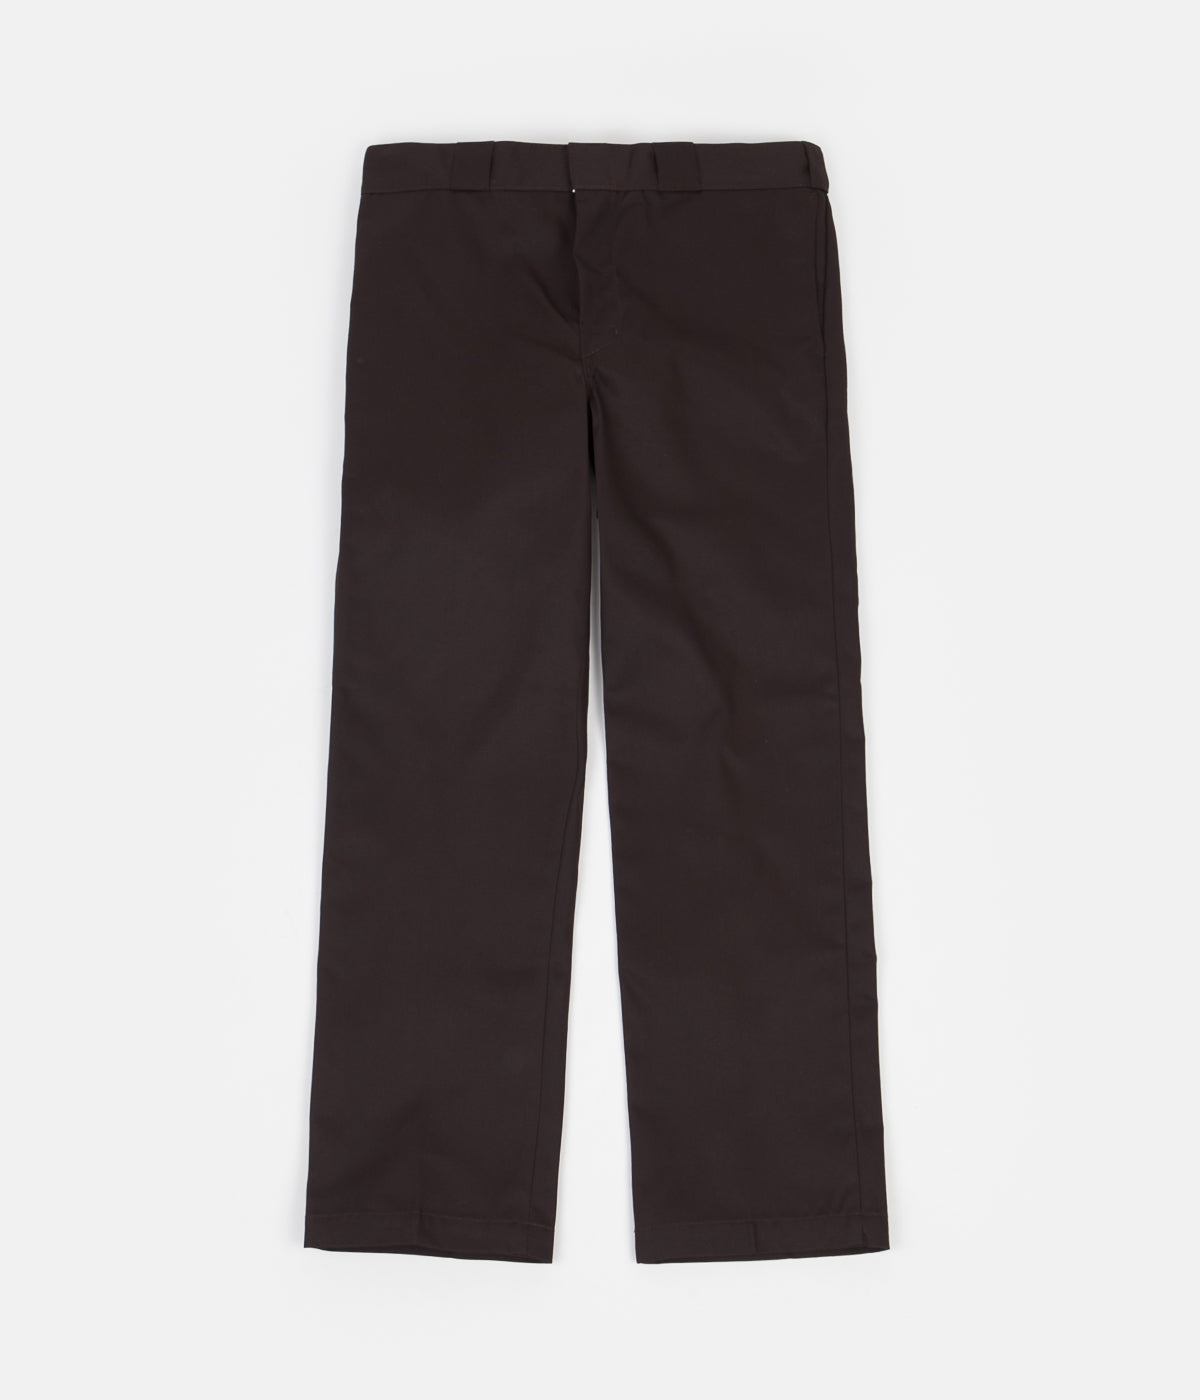 Dickies 874 work trousers in dark brown straight fit  BROWN  ASOS